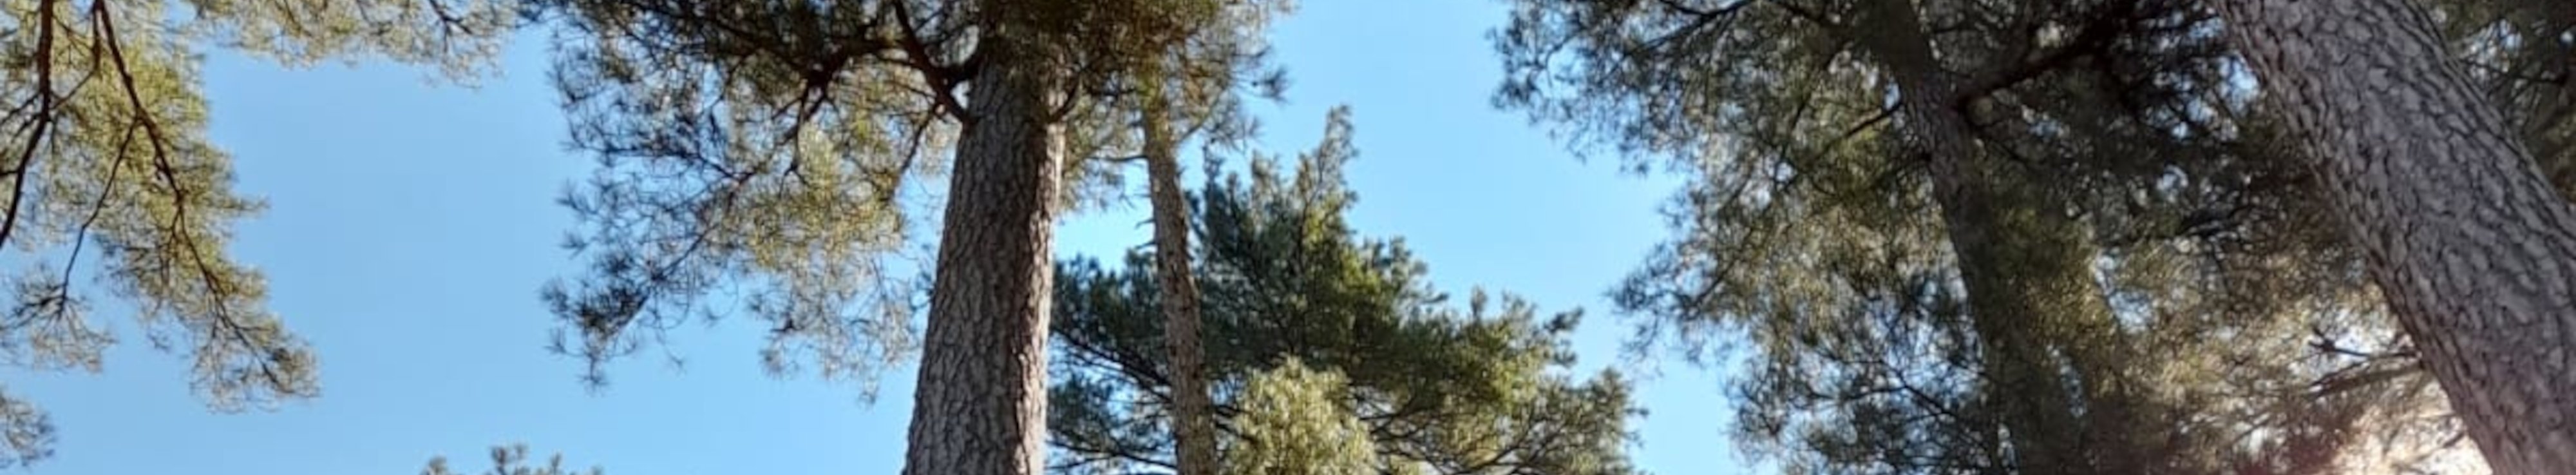 Nadelbäume vor blauem Himmel